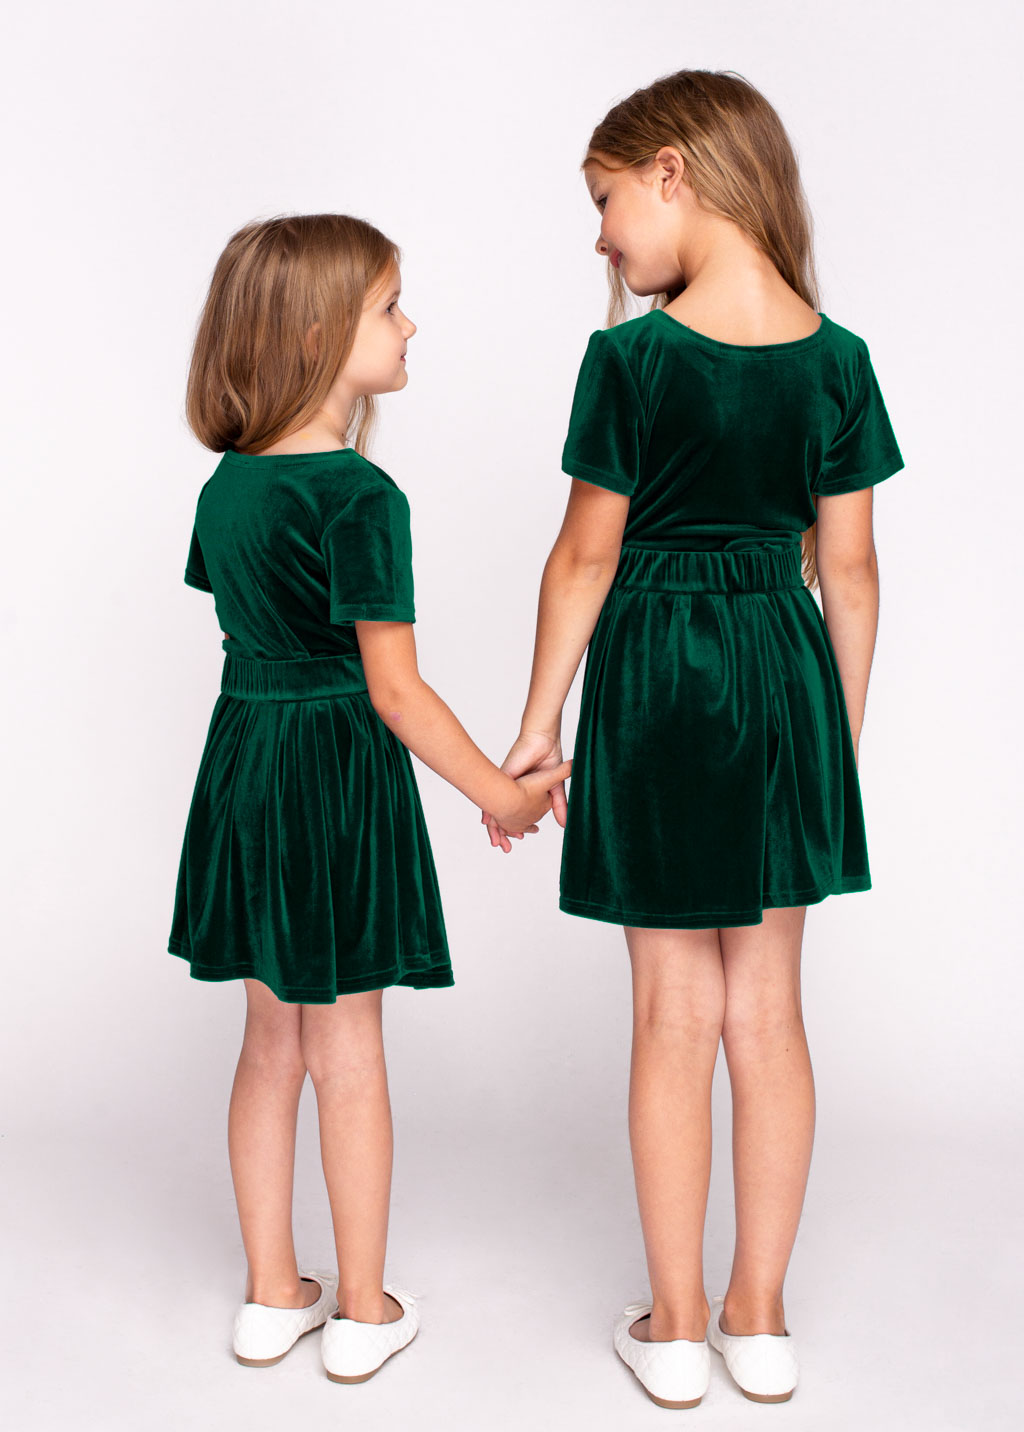 Mommy and me emerald green velvet dresses